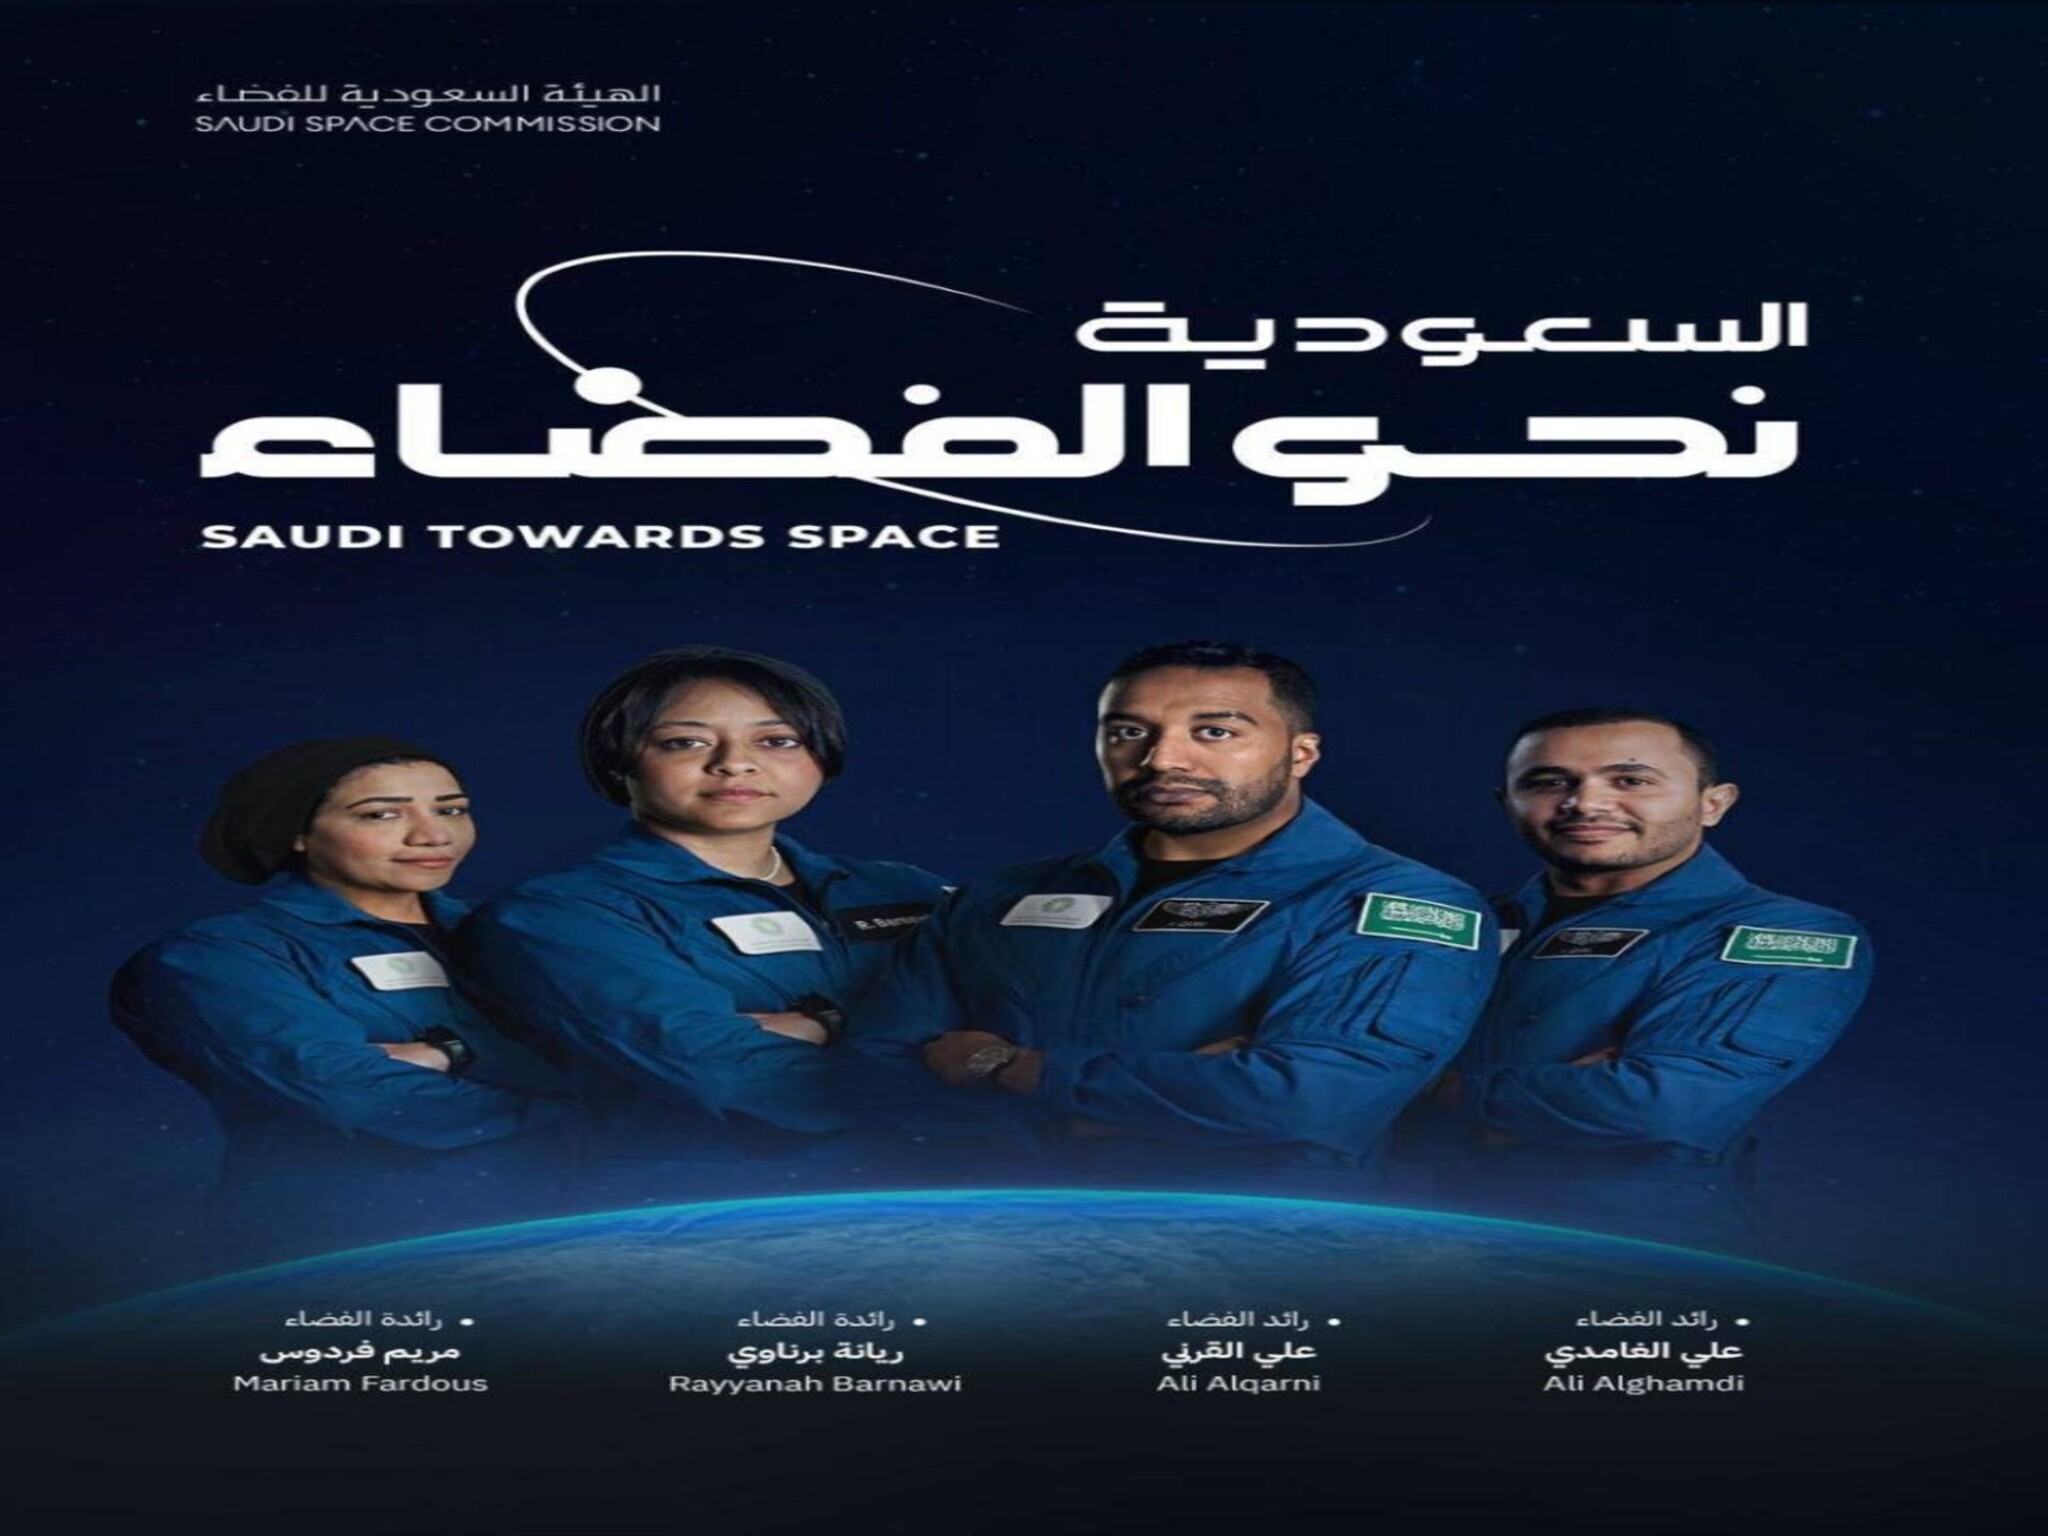 "السعودية نحو الفضاء"..ريانة برناوي أول رائدة فضاء سعودية وعربية مسلمة